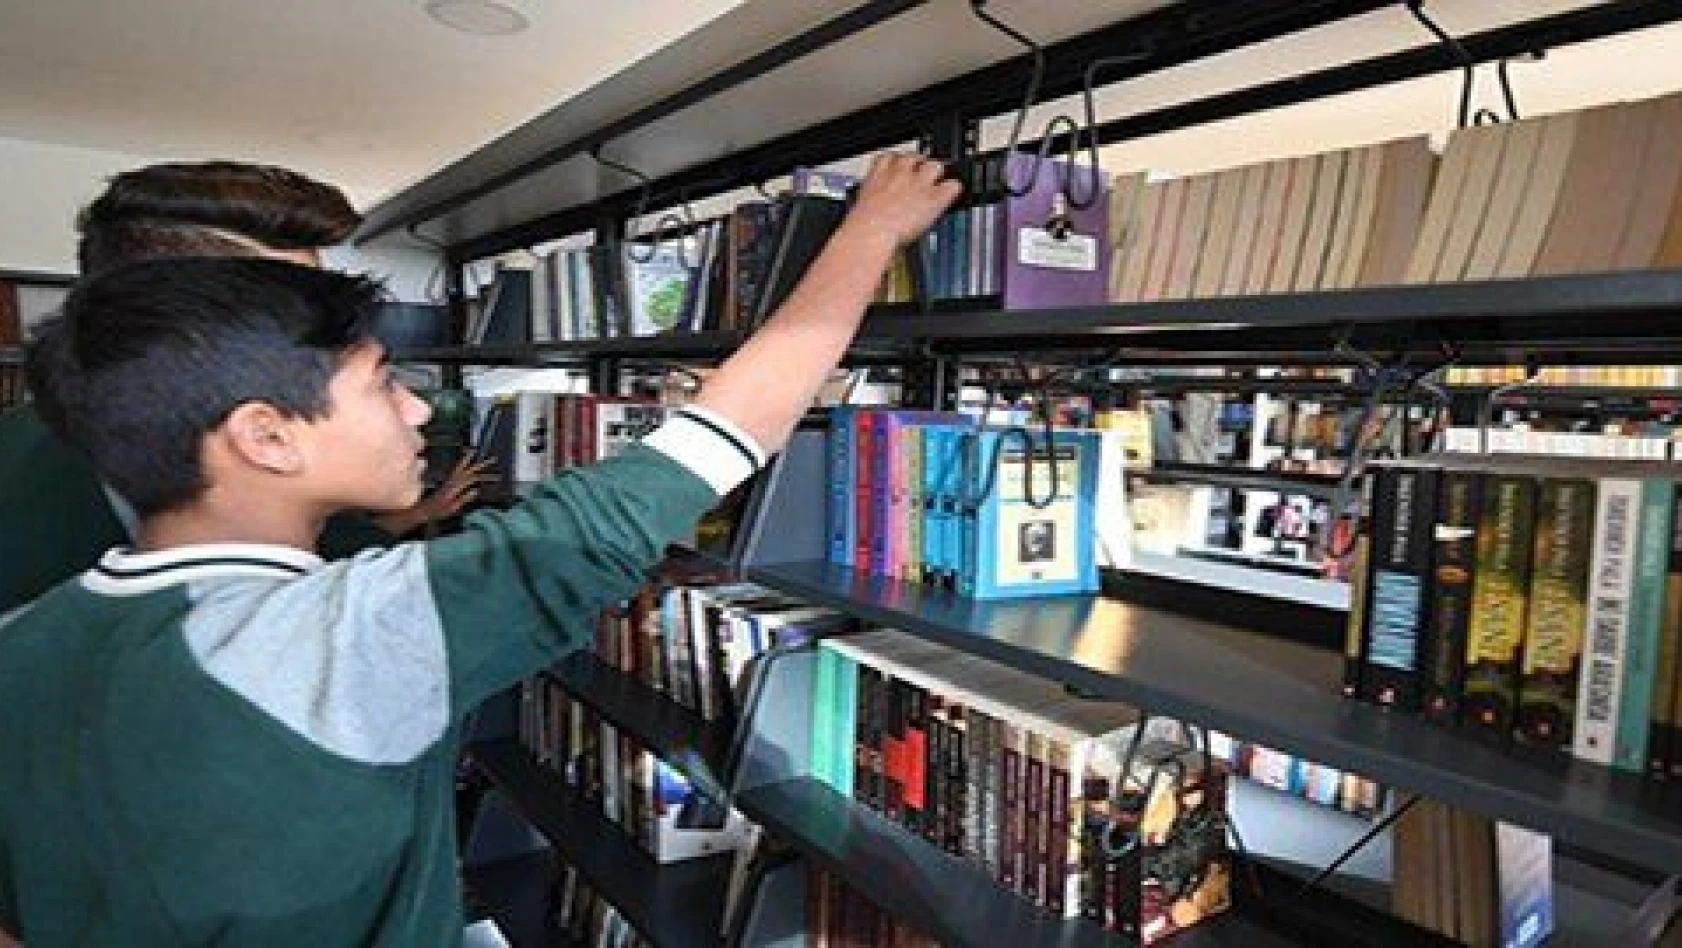 Özel Kayseri Osb Teknik Koleji kütüphanesi ile örnek oluyor 